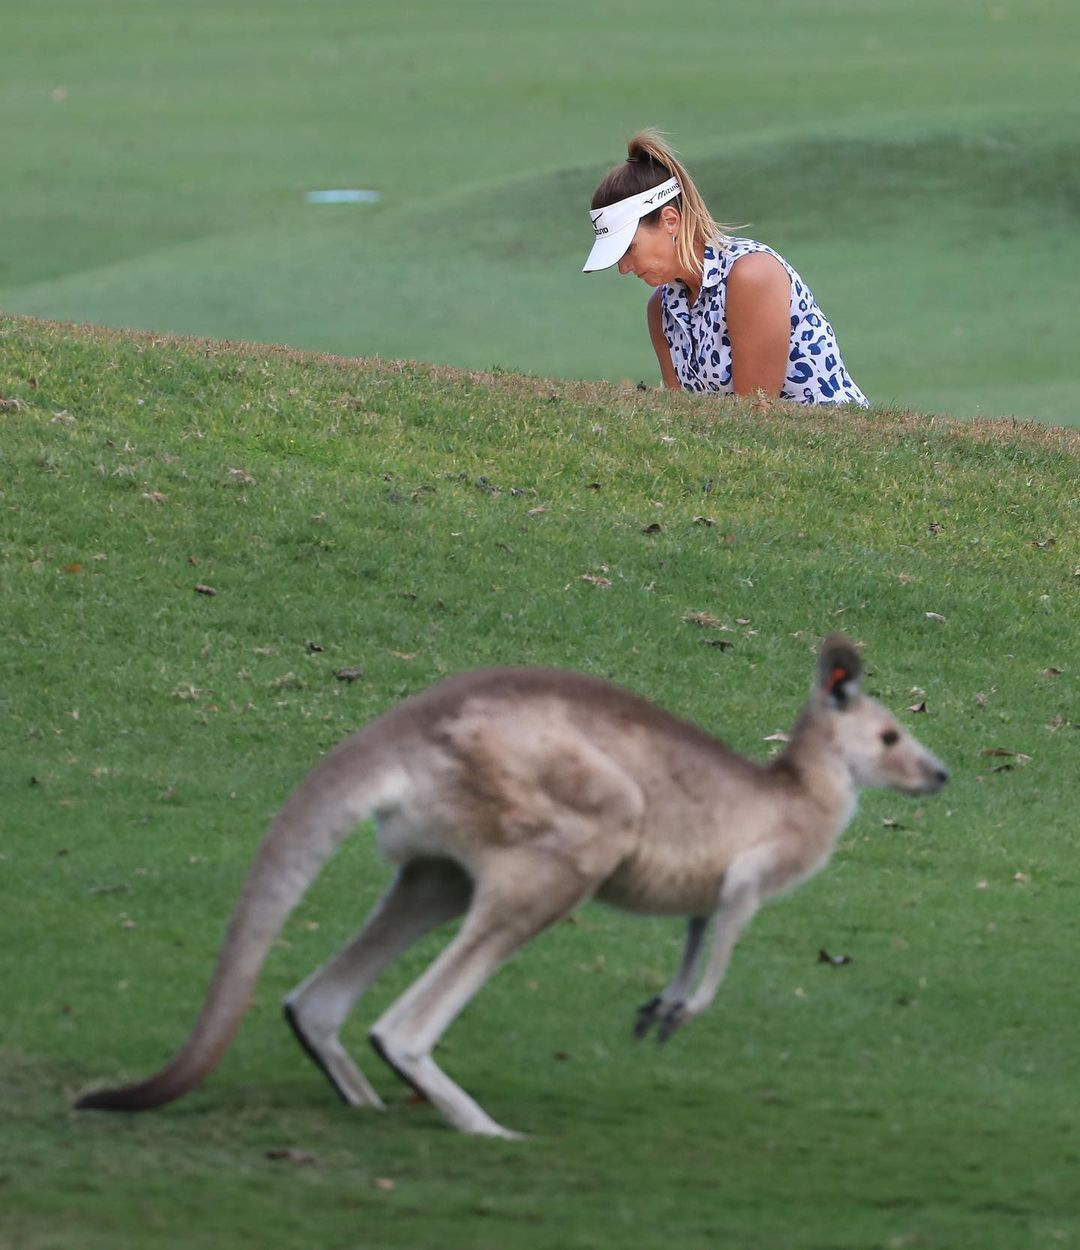 Klokani na golfových hřištích nejsou v Austrálii vzácností.